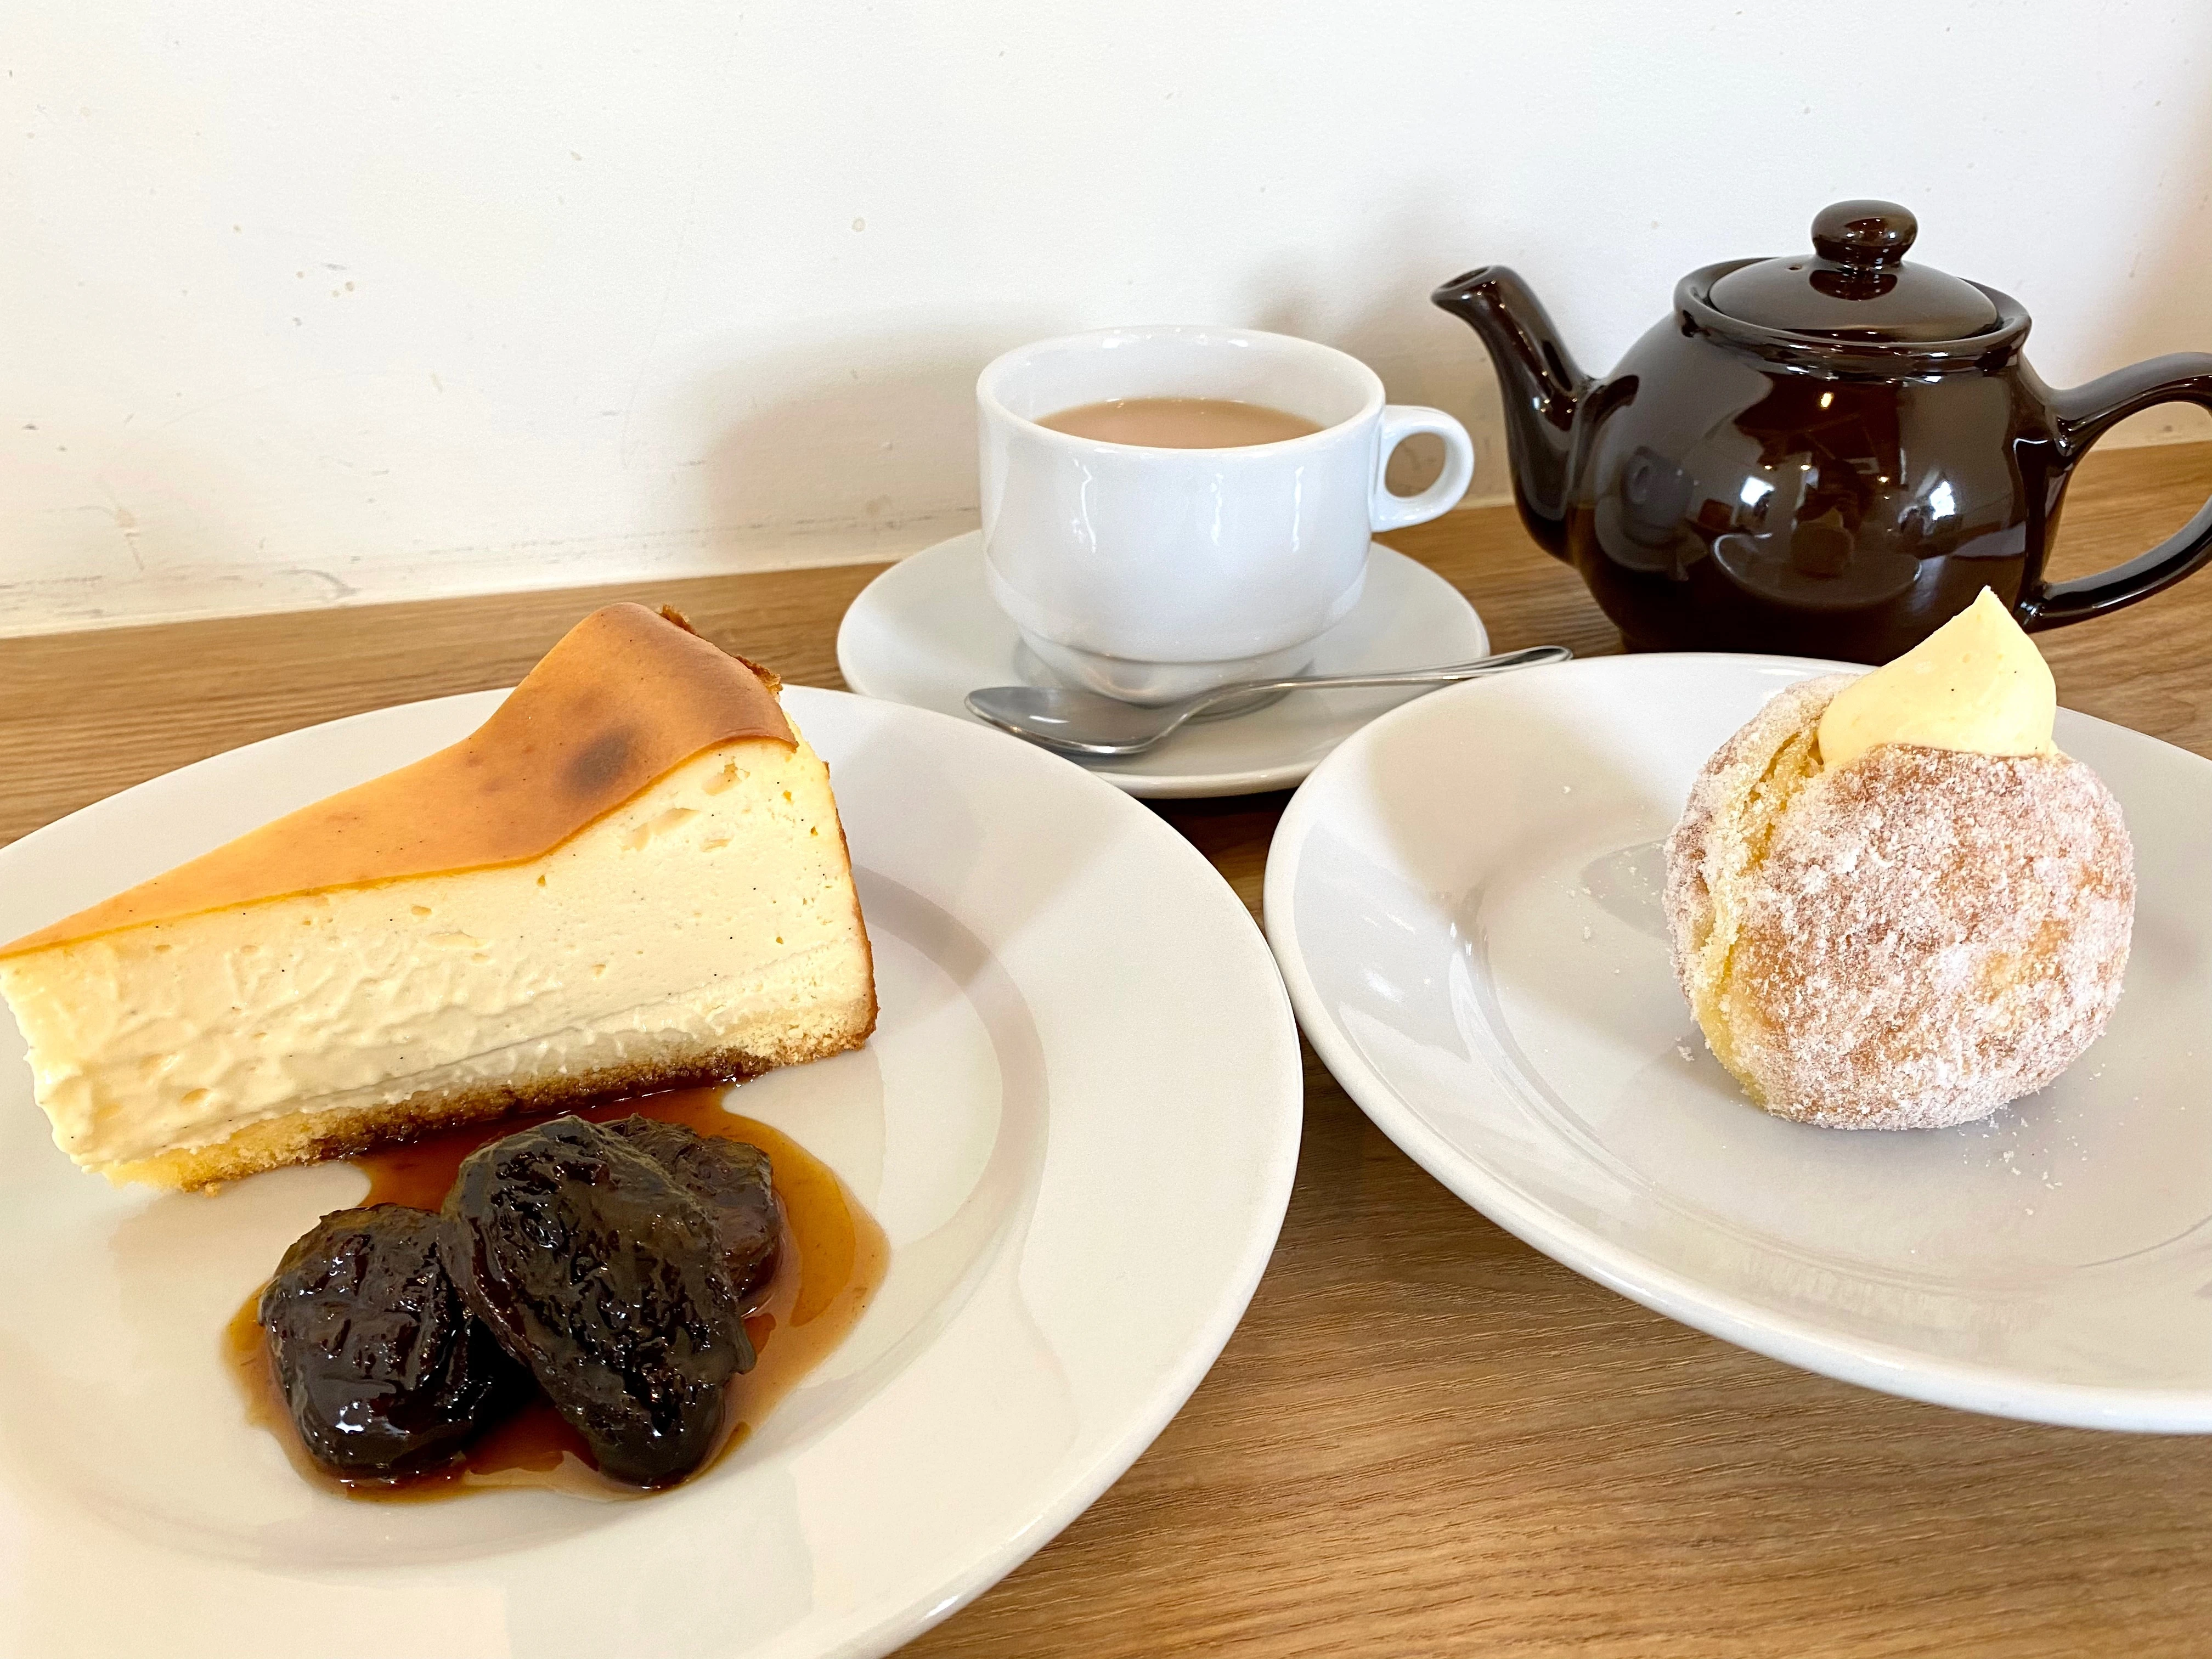 Kewのチーズケーキとハーフサイズドーナツのセット